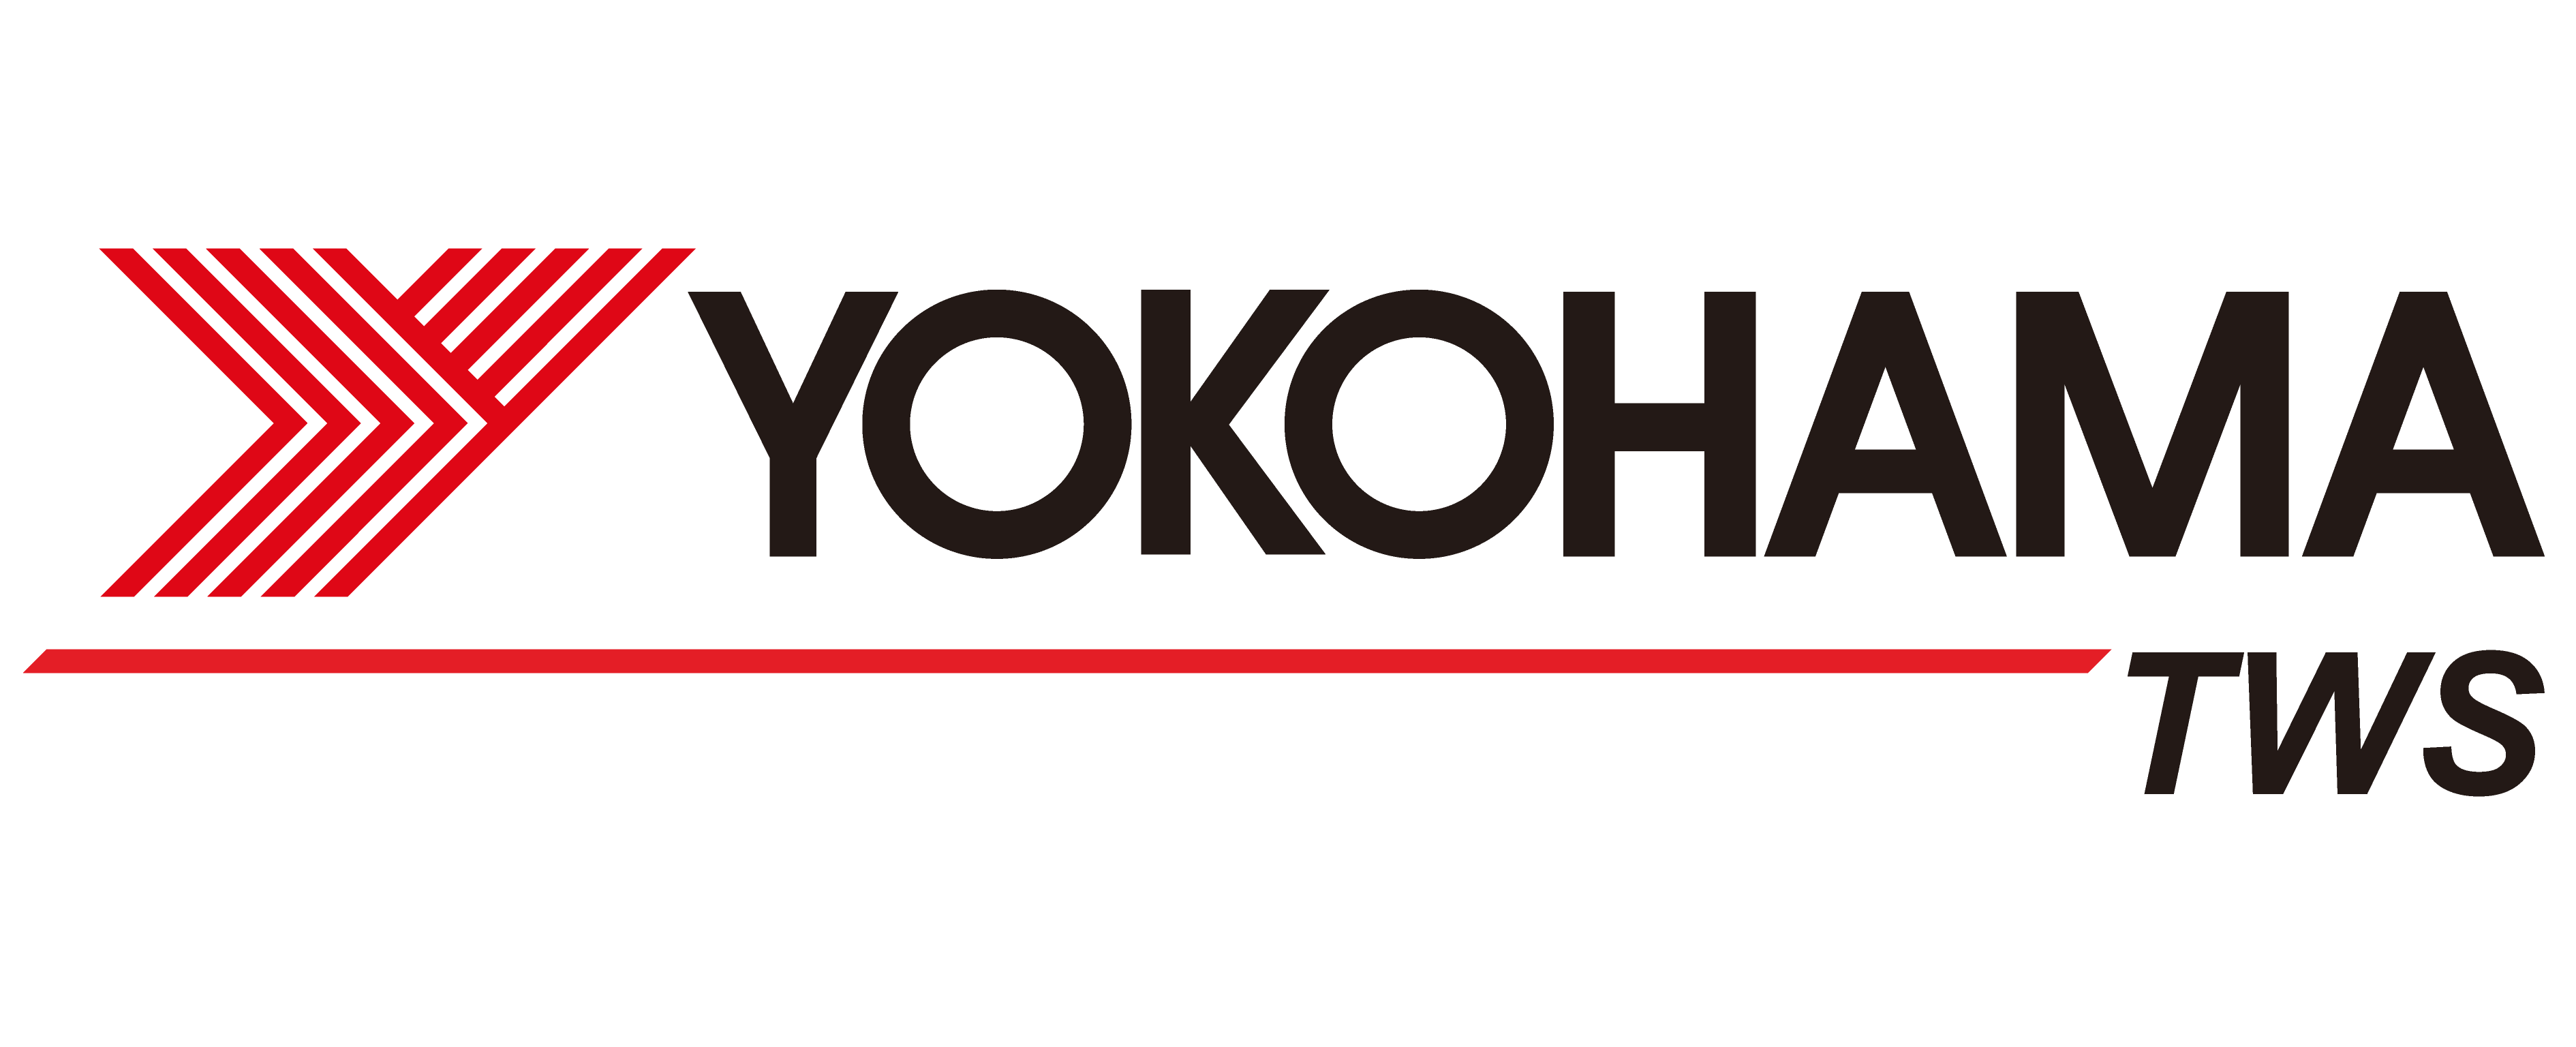 Yokohama шины тесты. Йокогама логотип. Йокогама шины логотип. Йокохама надпись. Yokohama магазин.